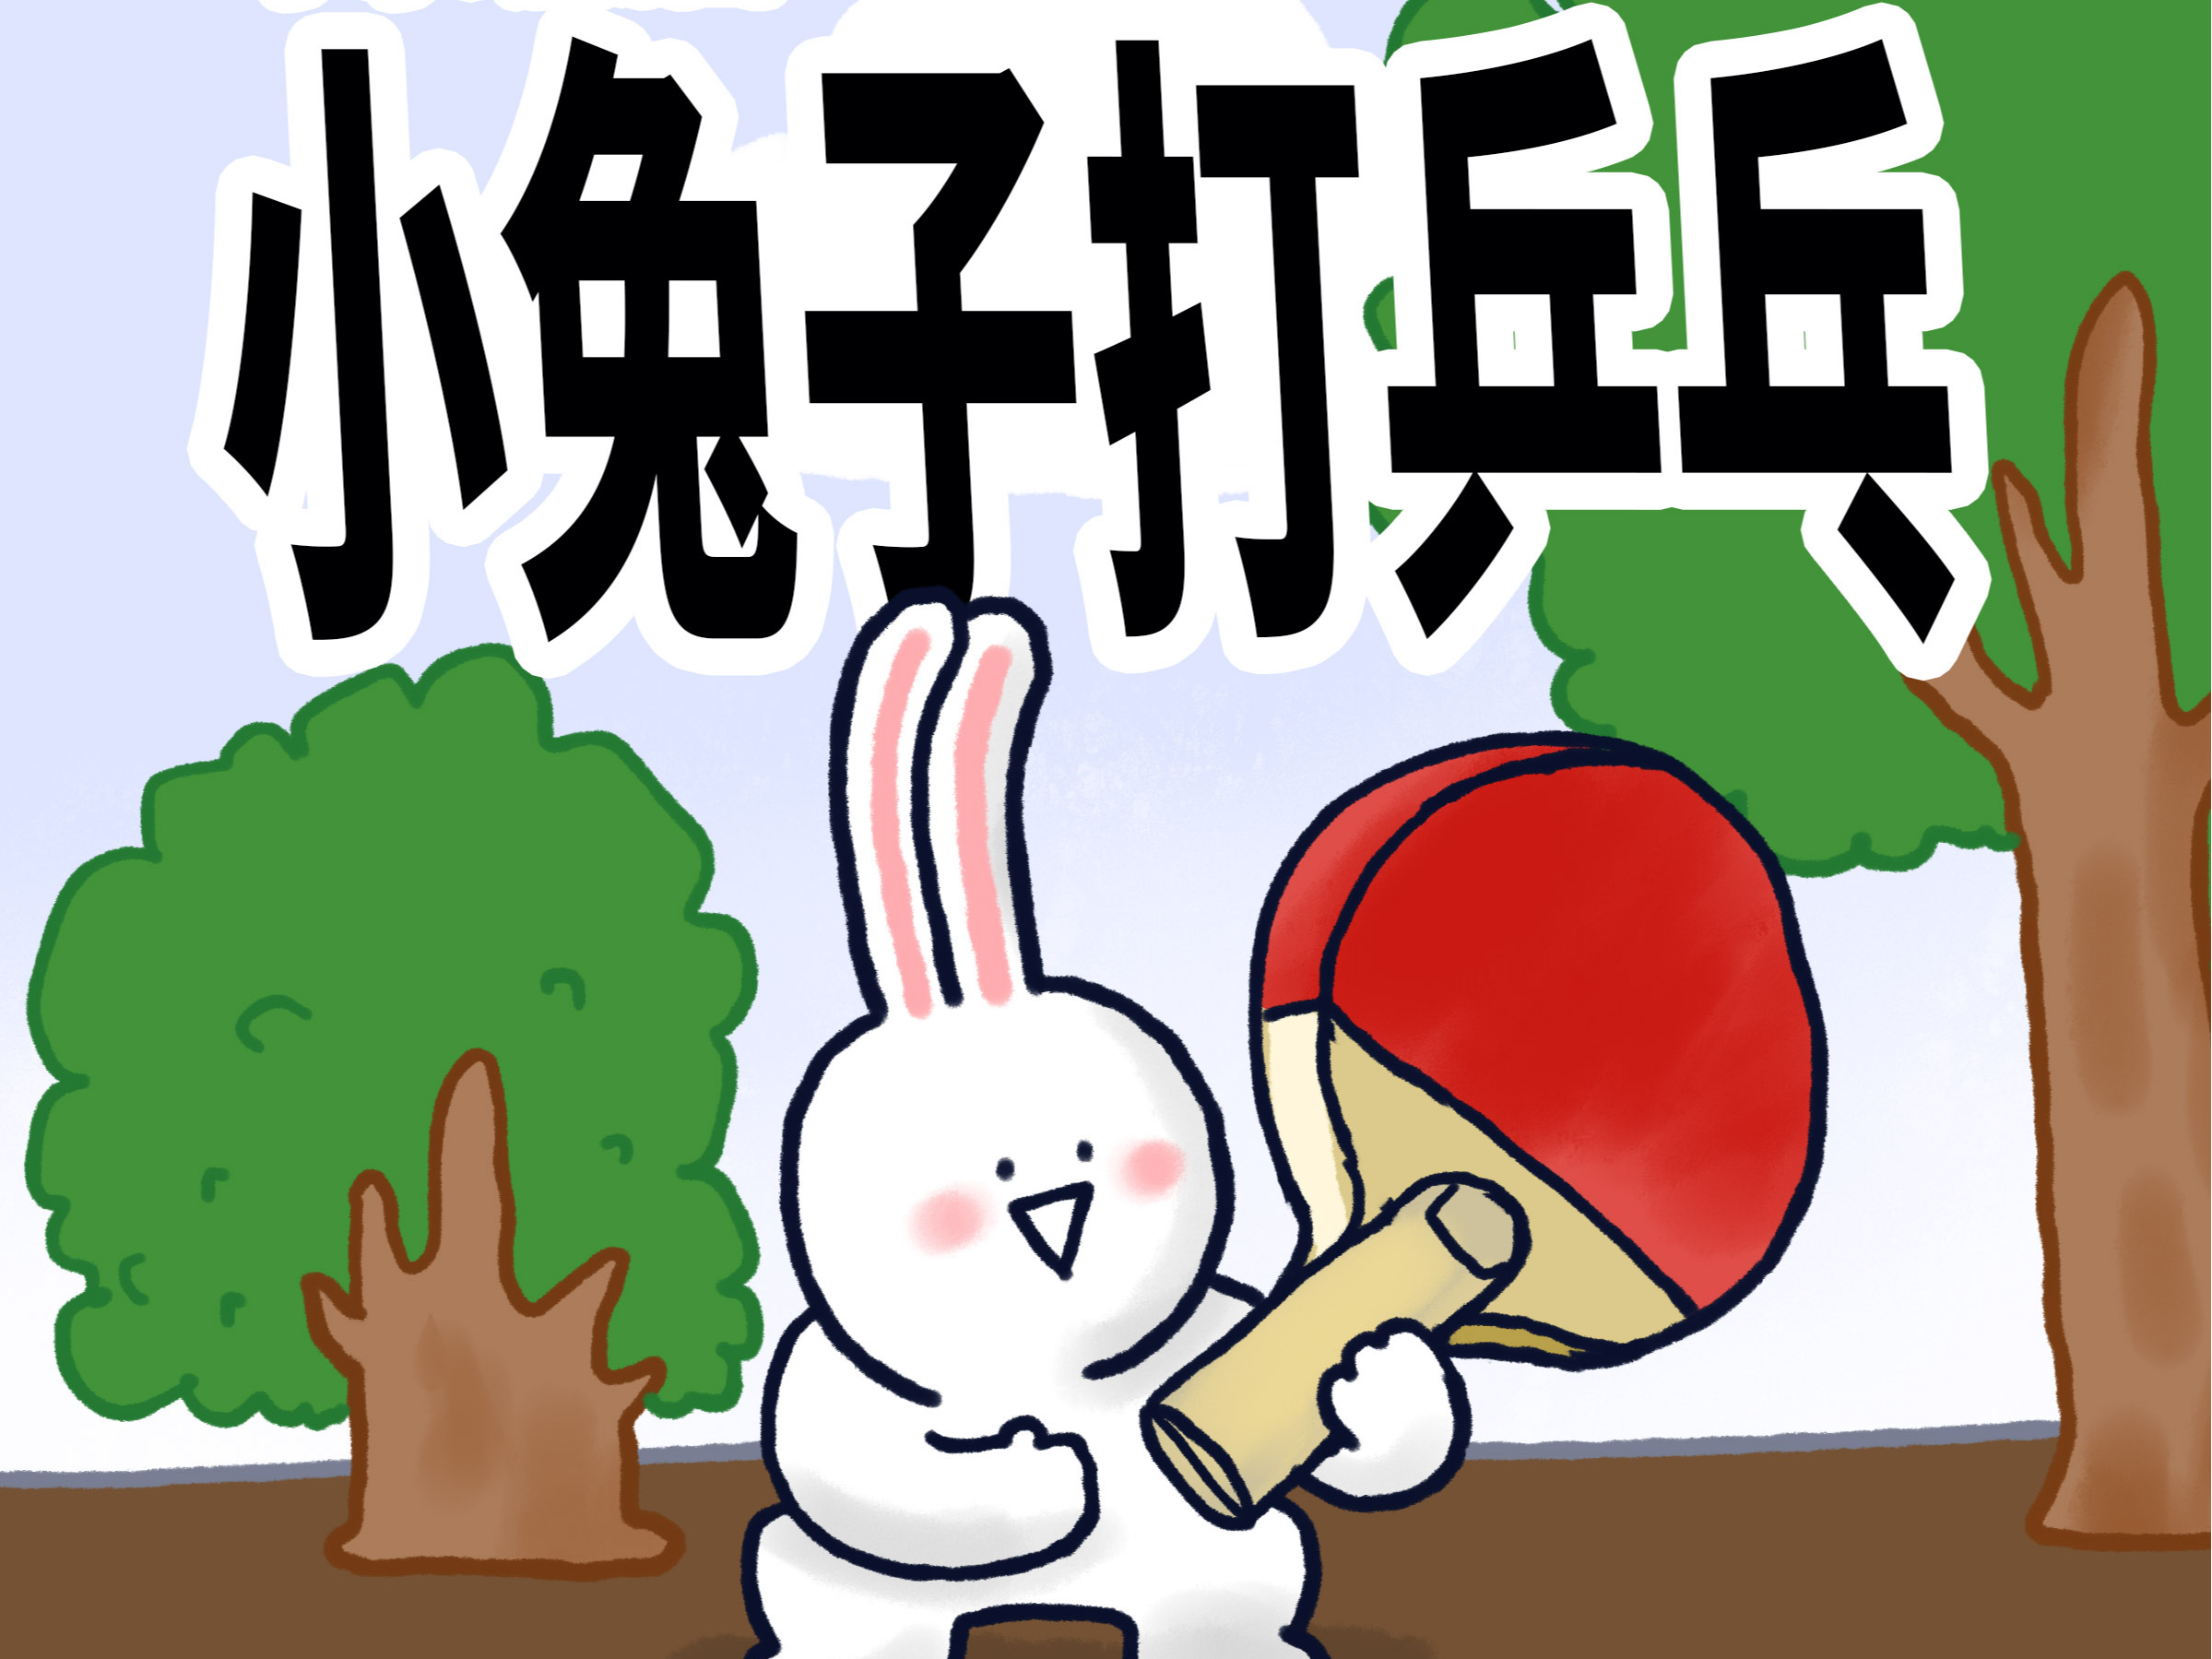 【小矛动物园】小兔子打乒乓球打的好的原因找到啦!